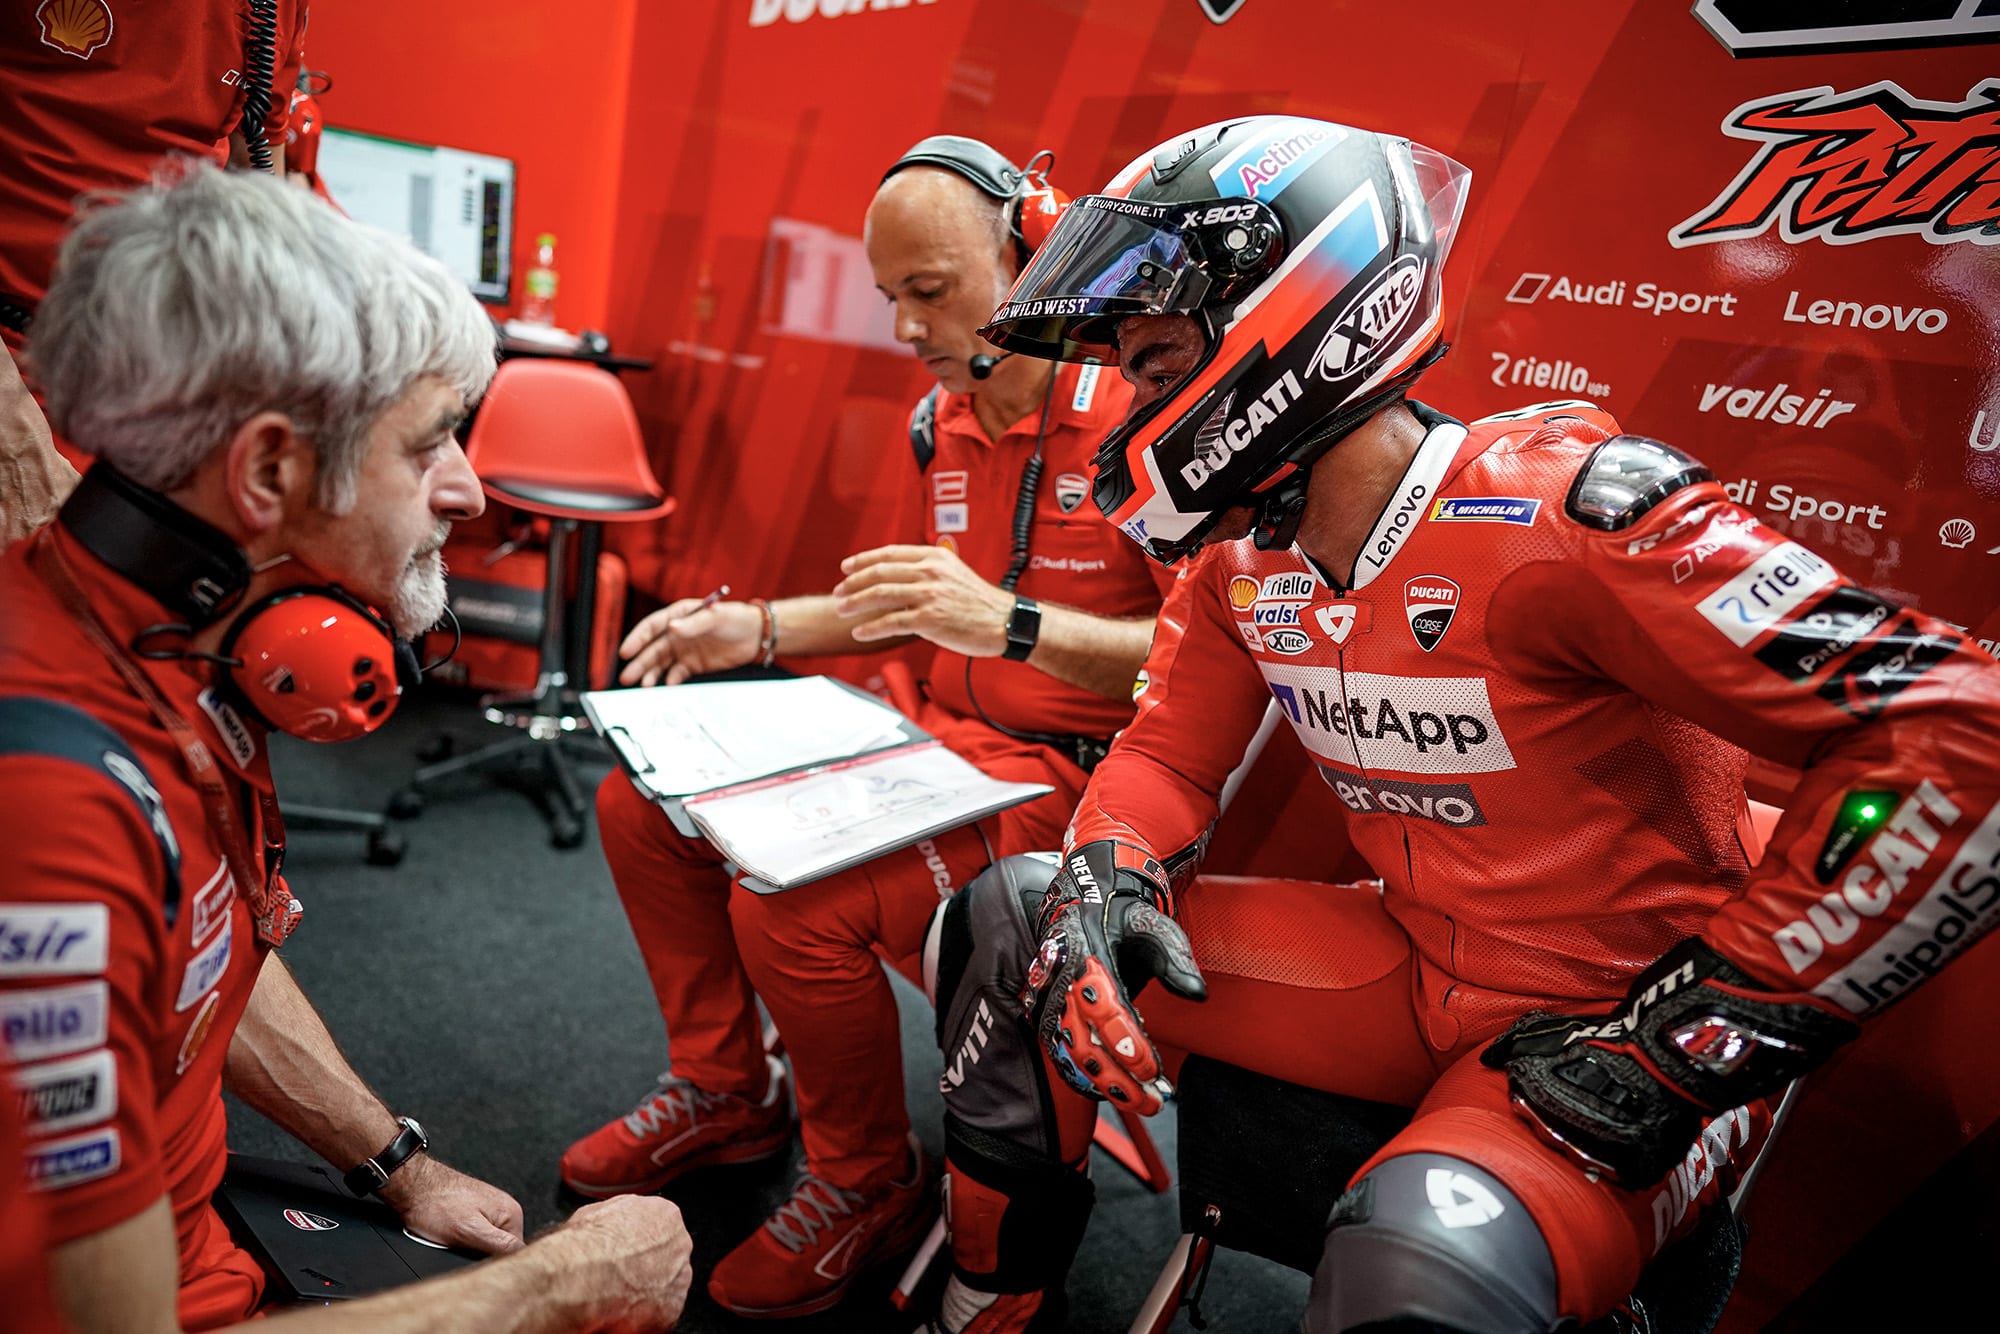 Petrucci in the Ducati garage with Dall'Igna